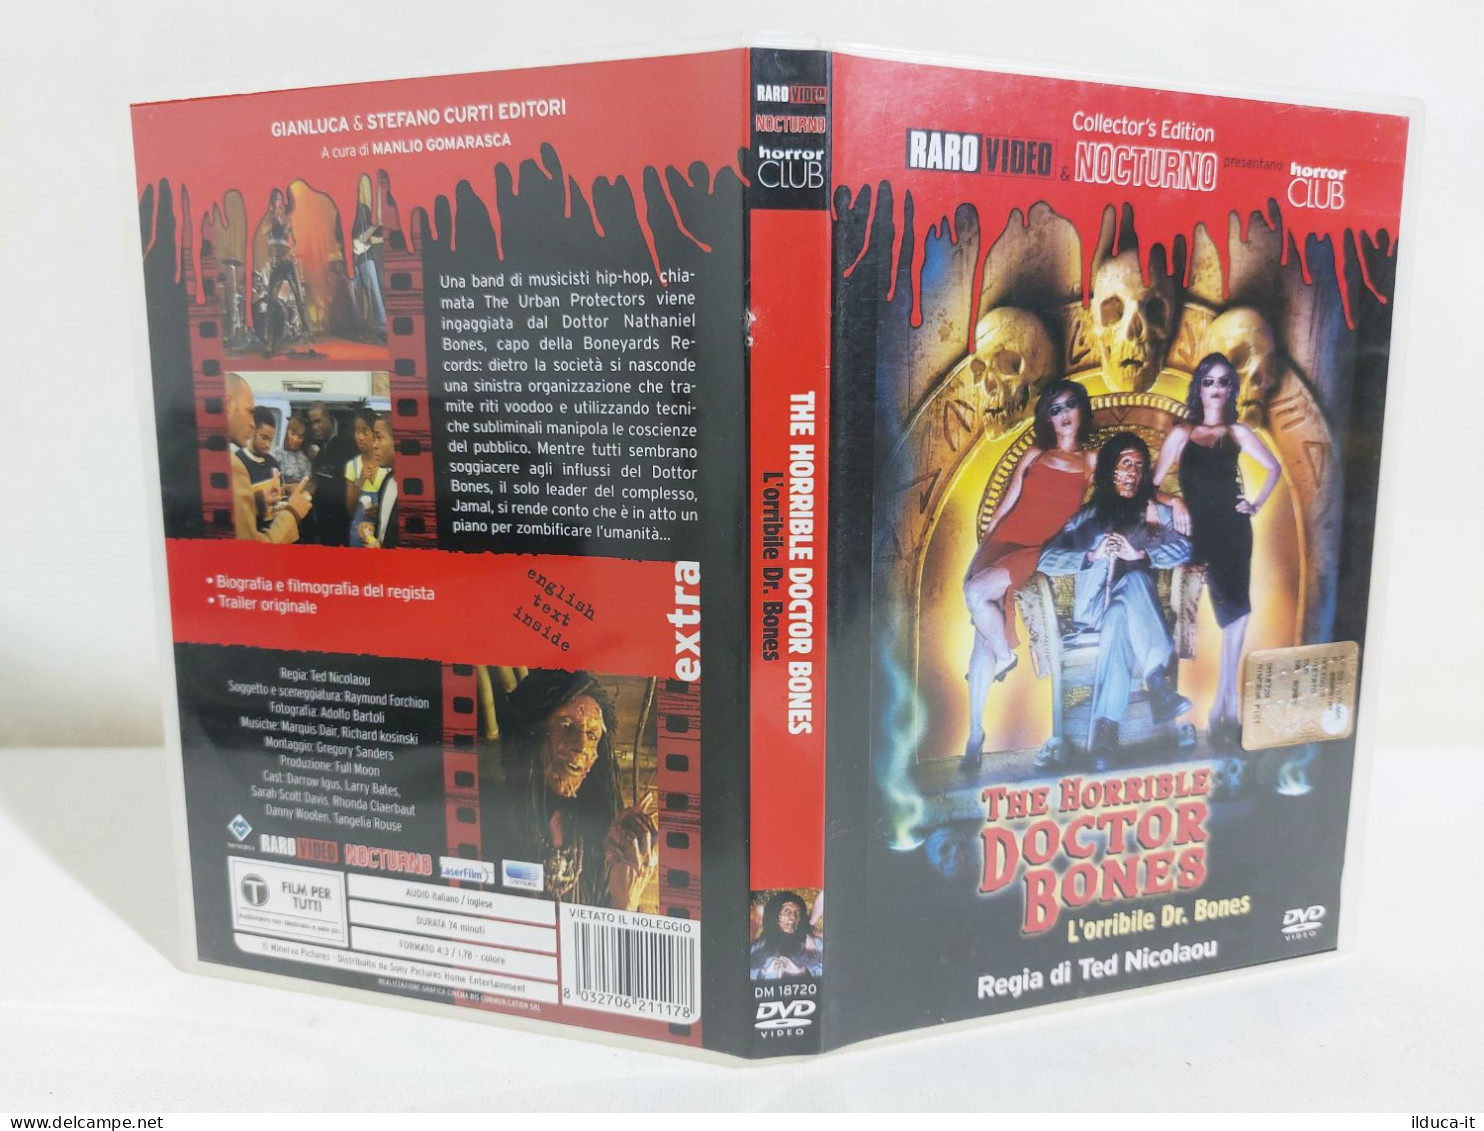 39580 DVD - The Horrible Doctor Bones - Regia Ted Nicolau - Darrow Igus - Horror